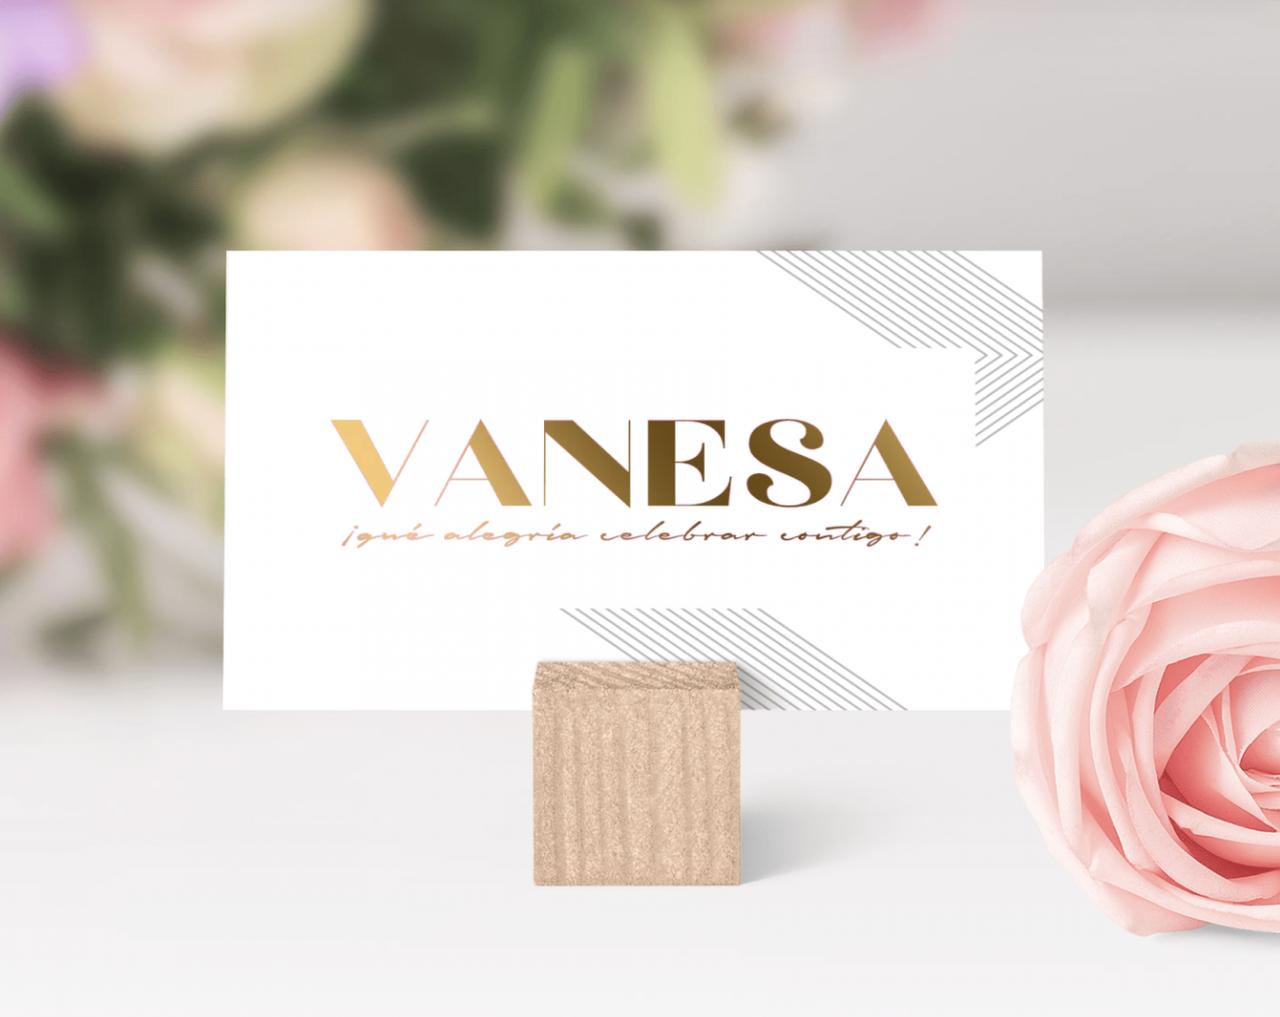 Tarjeta con el nombre de Vanesa en una tipografía de color dorado sobre una base cuadrada de madera